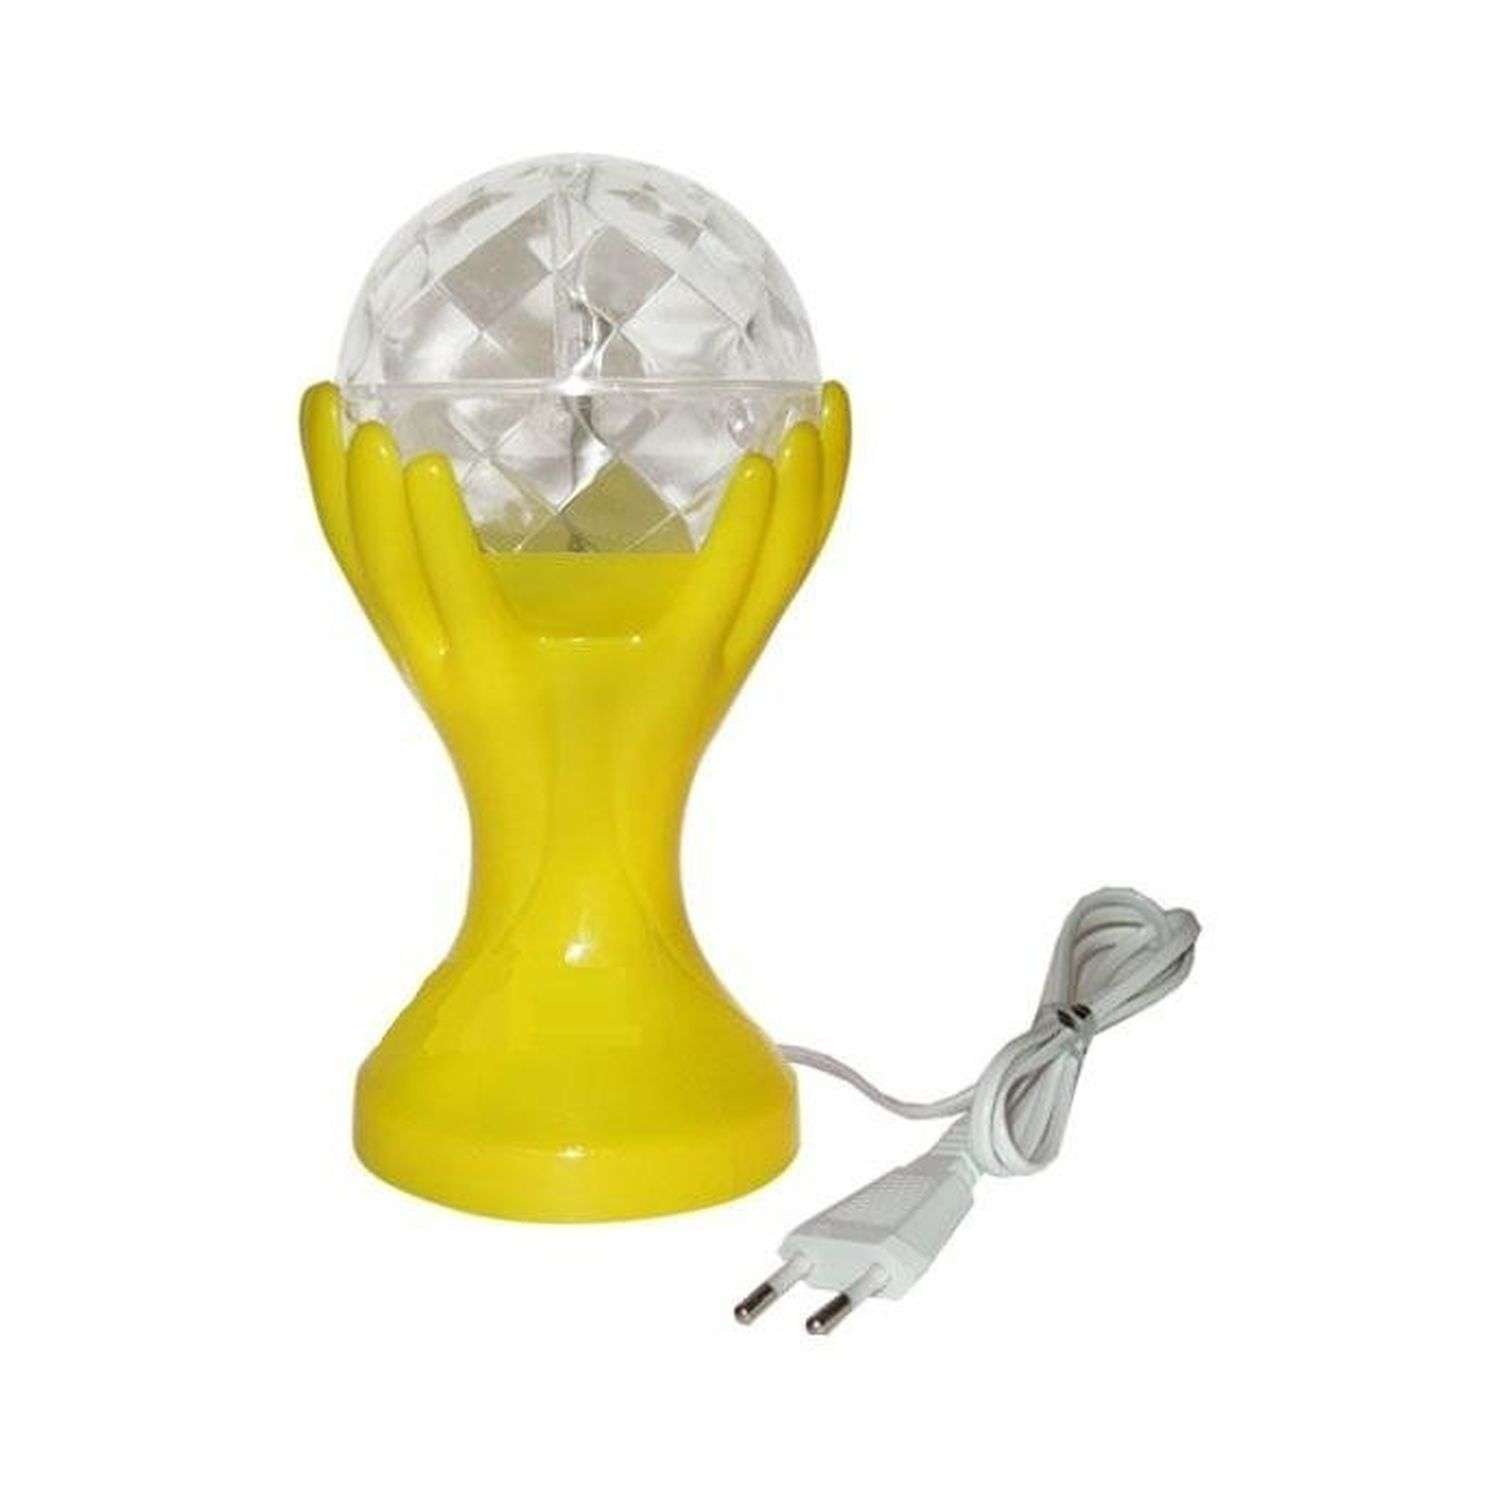 Cветильник Rabizy LED декоративный шар в руках 18 см - фото 2